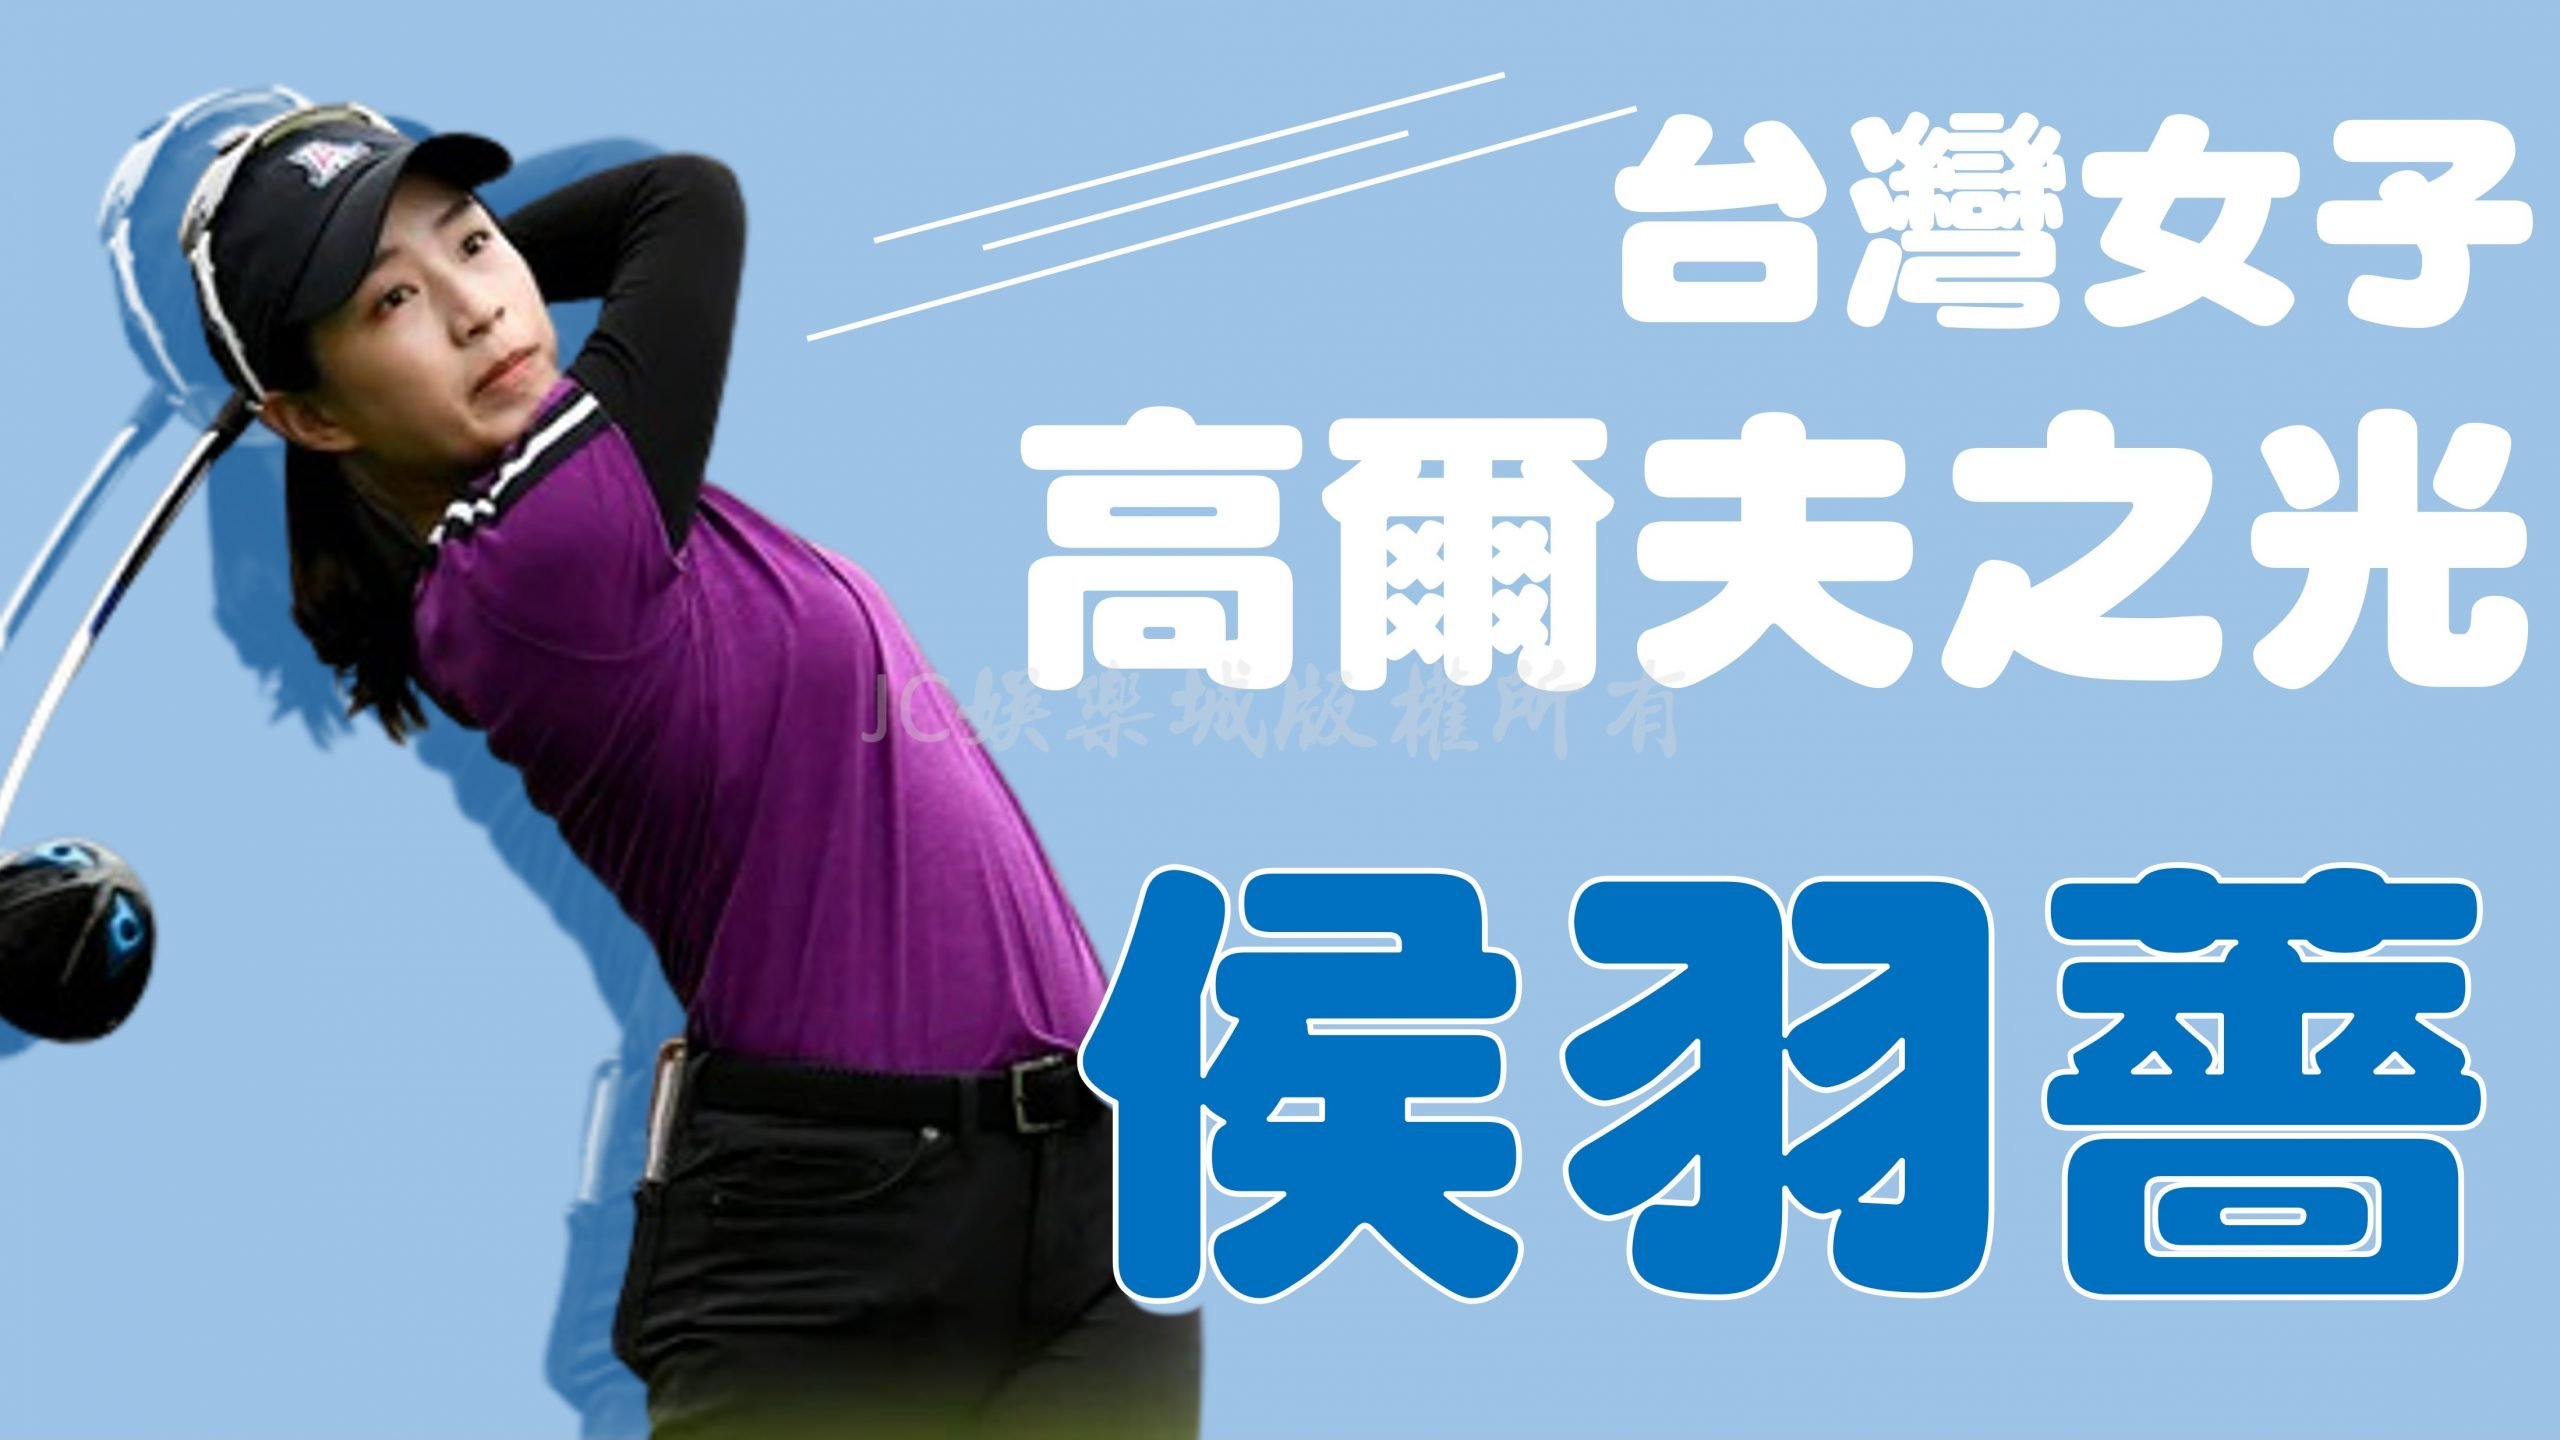 侯羽薔獲得【2022年美國女子公開賽參賽資格】！台灣高爾夫球之光！